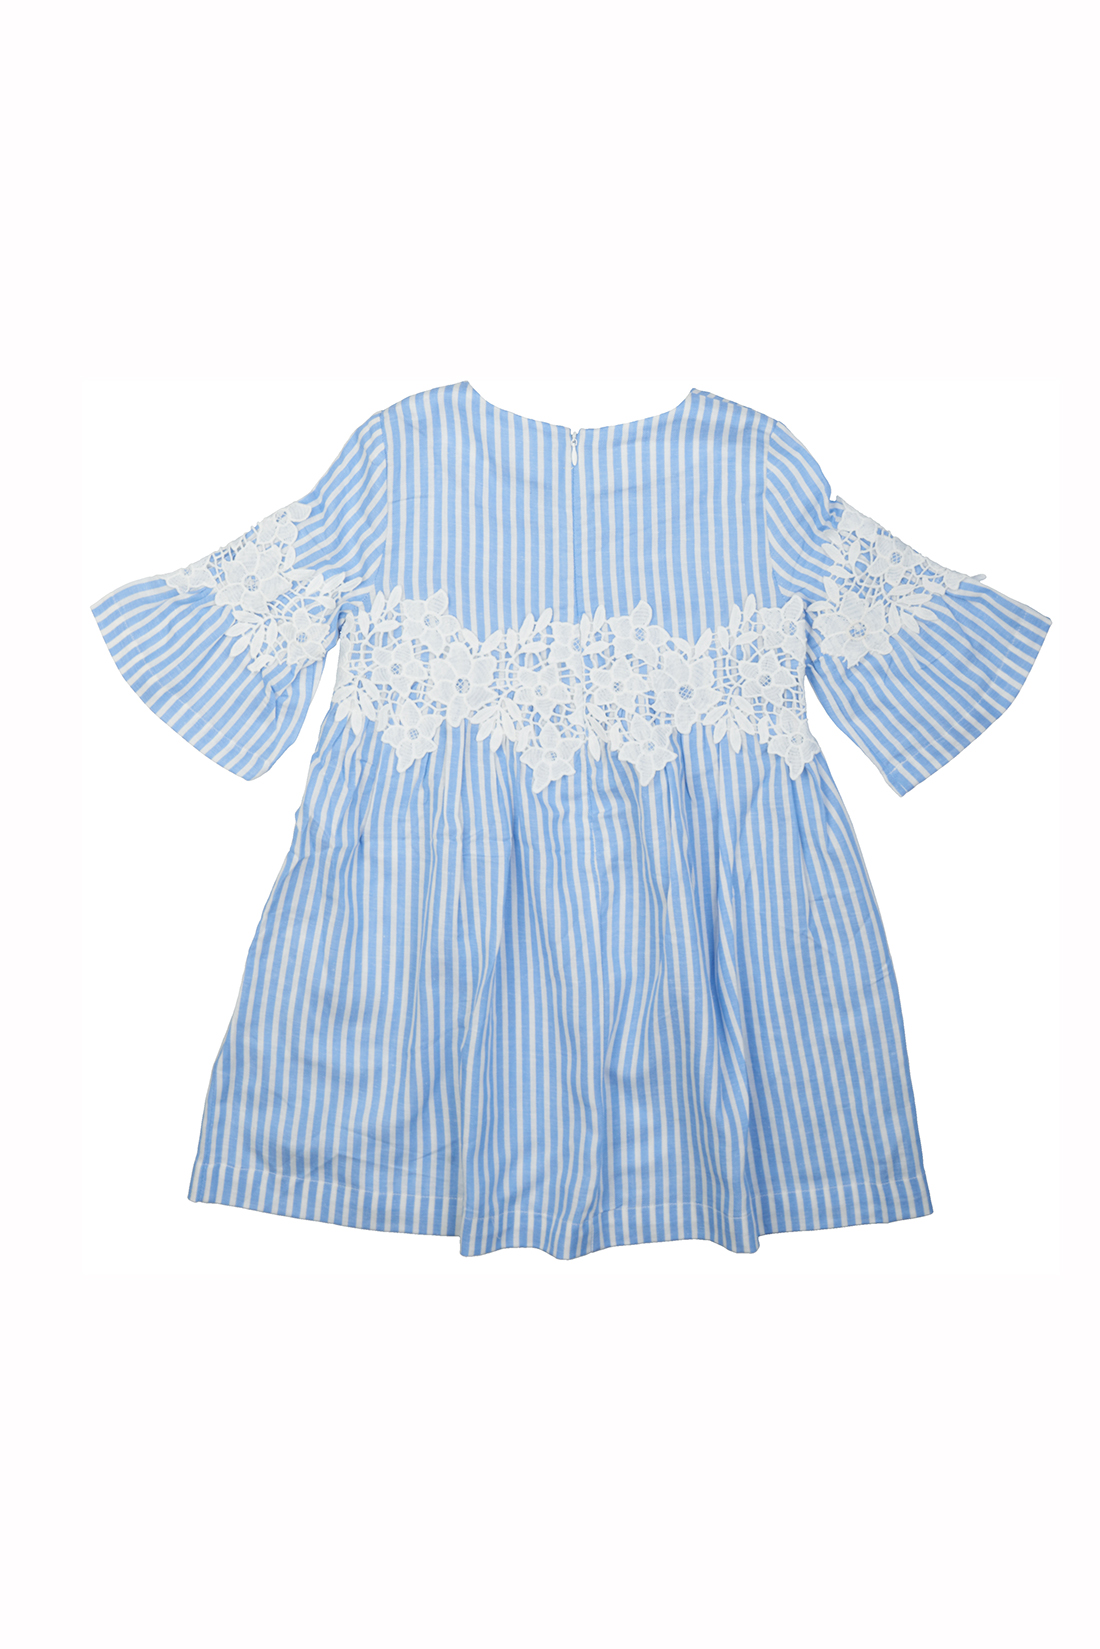 Платье для девочки (арт. baon BK459008), размер 98-104, цвет синий Платье для девочки (арт. baon BK459008) - фото 3